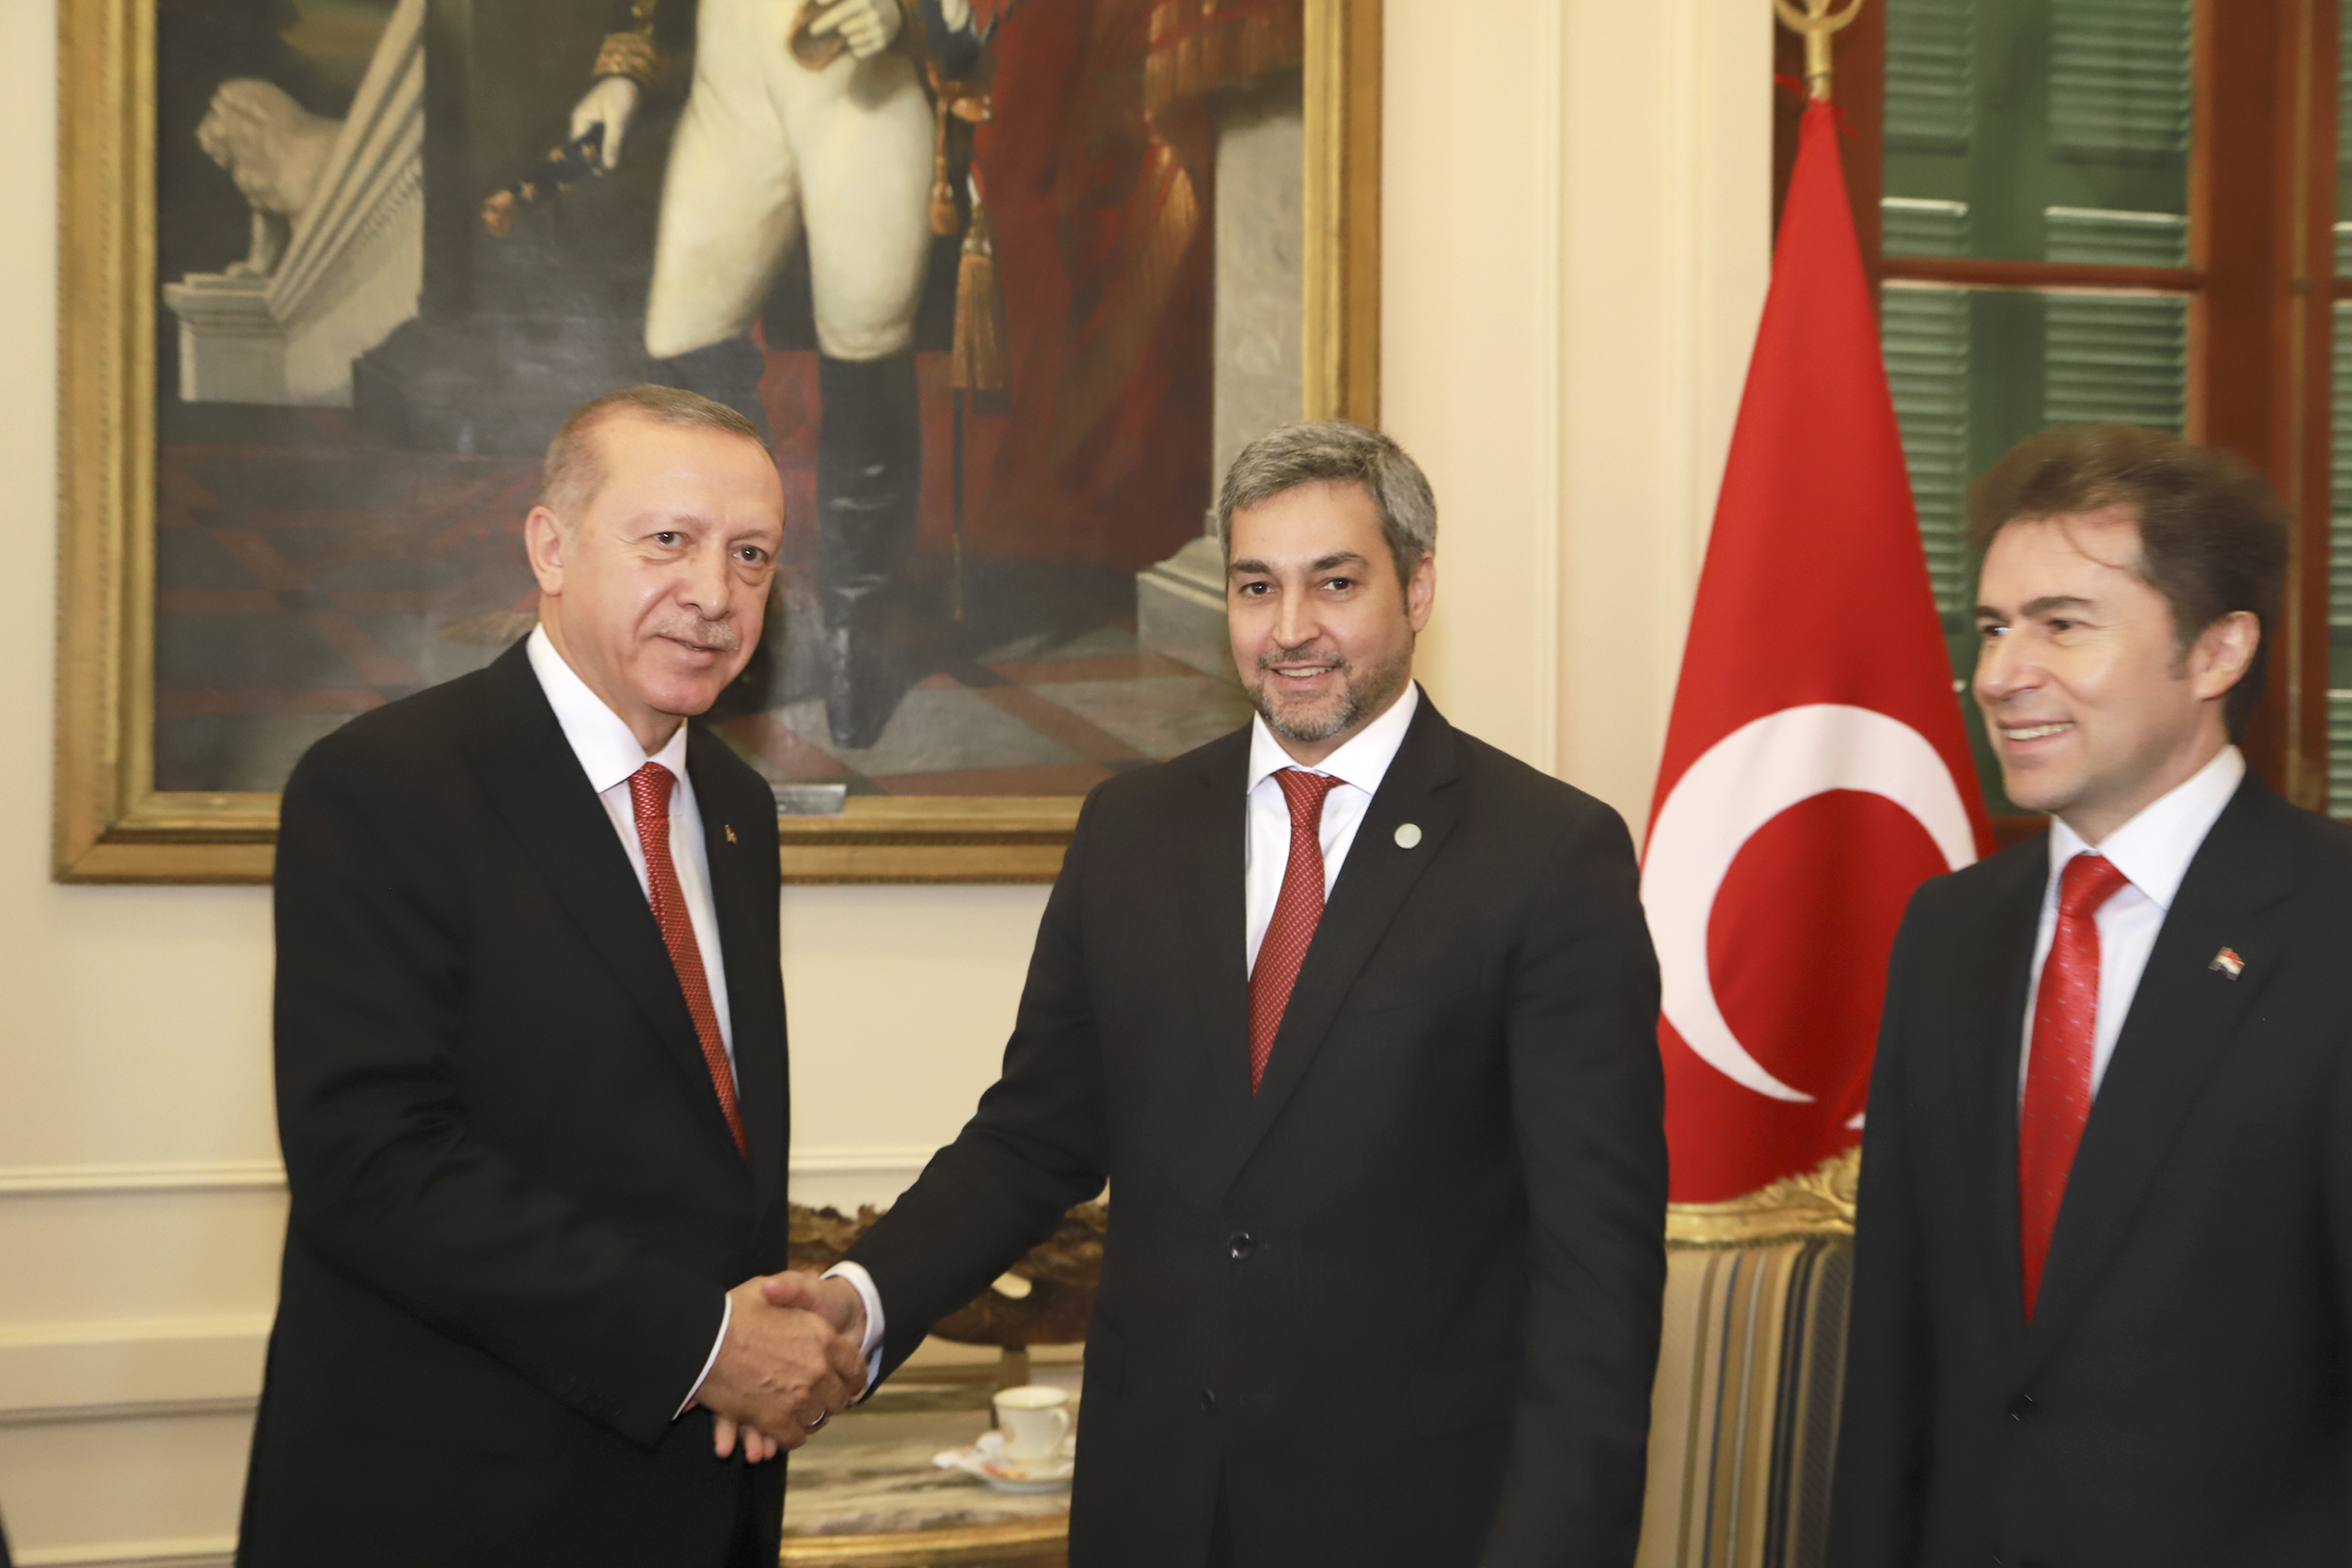 La visita del Presidente de Turquía es resultado de la nueva política de Relaciones Exteriores, afirmó el Canciller Castiglioni